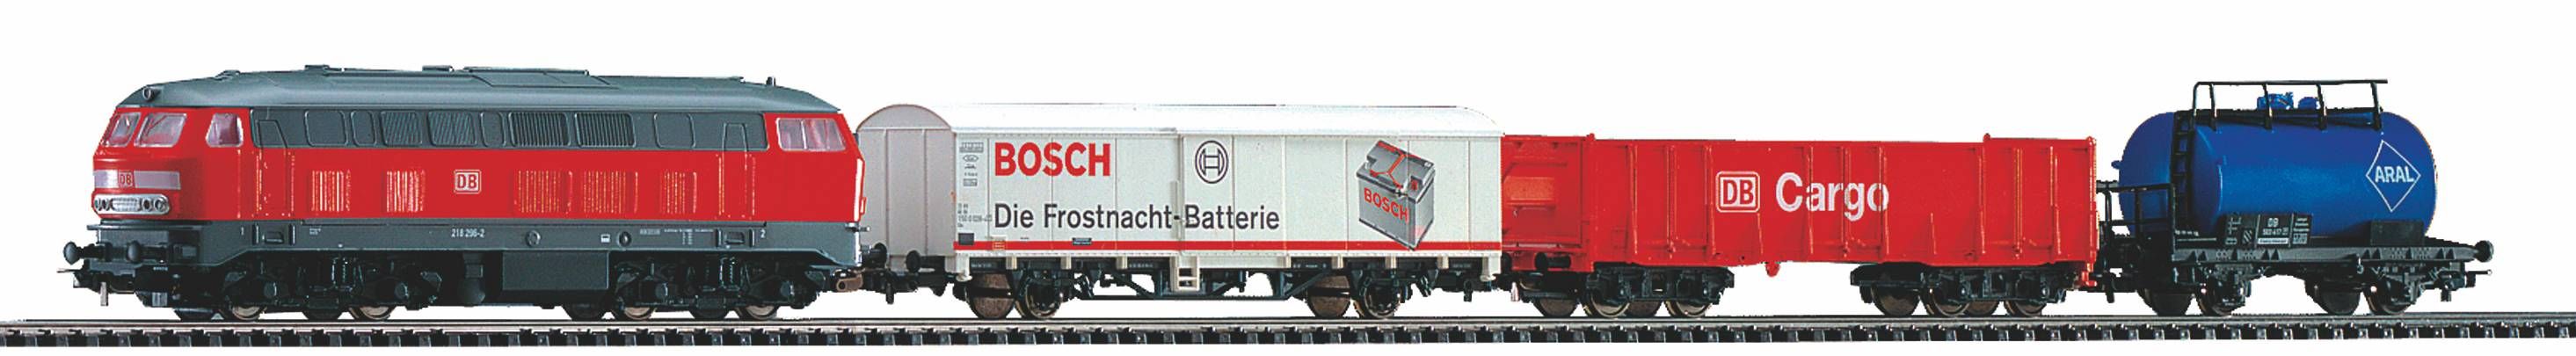 Confezione iniziale merci DB Cargo - diesel, PIKO A-binari con massicciata